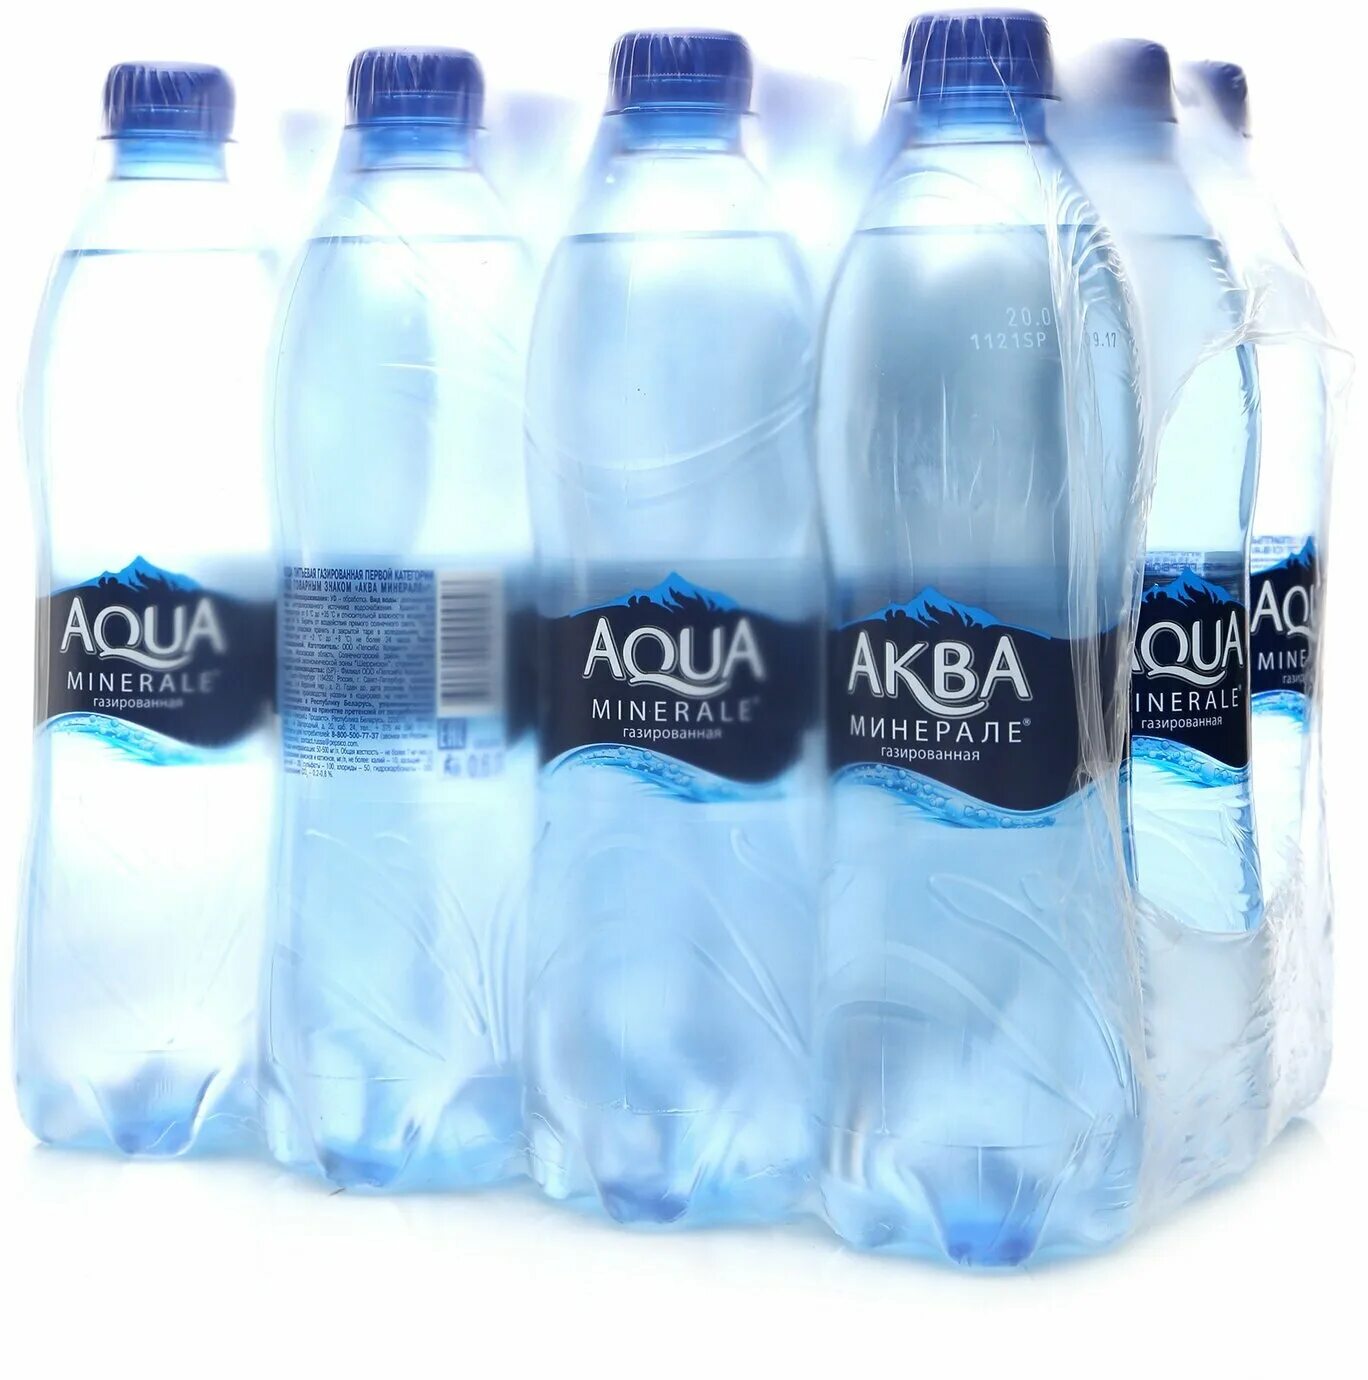 Aqua minerale стекло. Аква Минерале Фреш. Аква Минерале упаковка. Газированная минеральная вода для организма